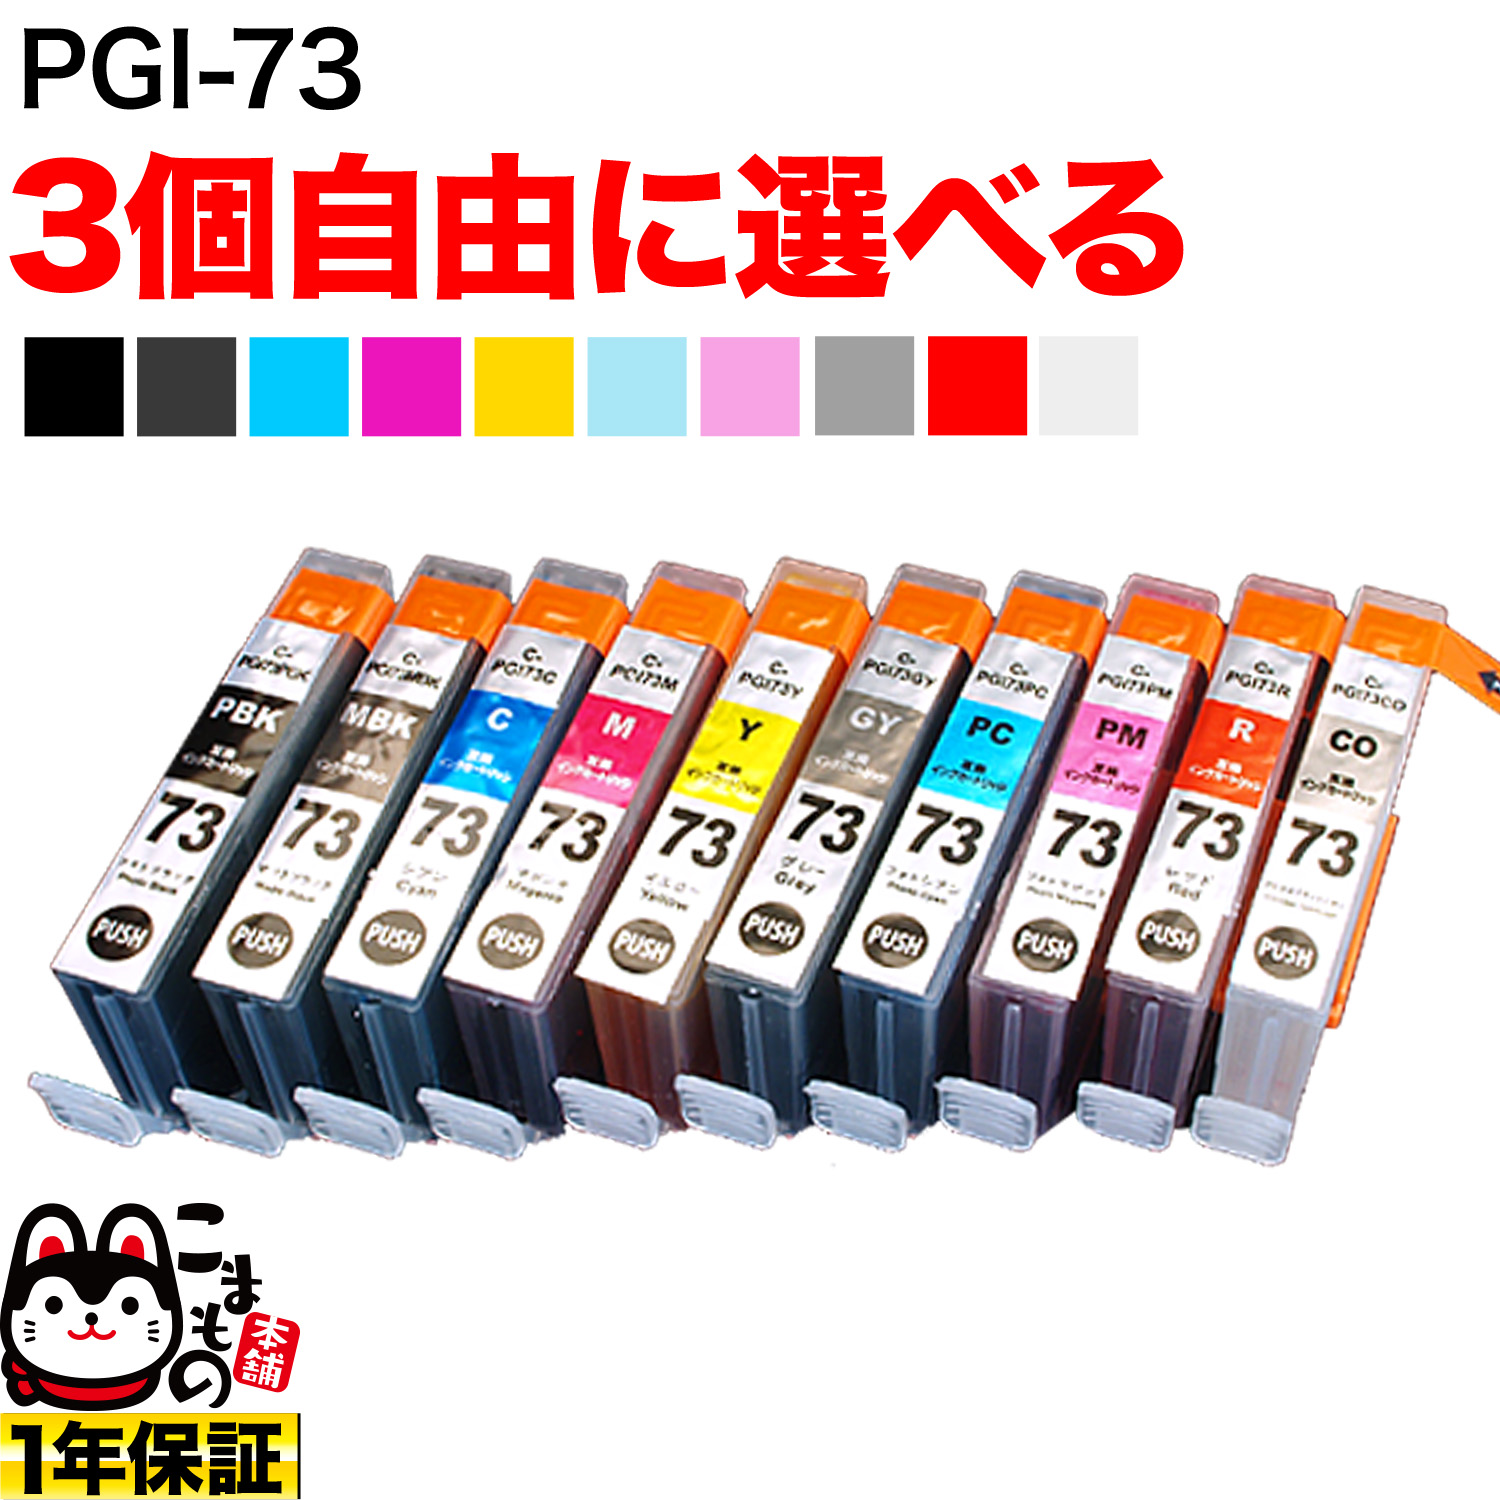 キヤノン PGI-73互換インクカートリッジ 自由選択3個セット フリーチョイス 【メール便可】 選べる3個セット キヤノン用 PGI-73 互換インク